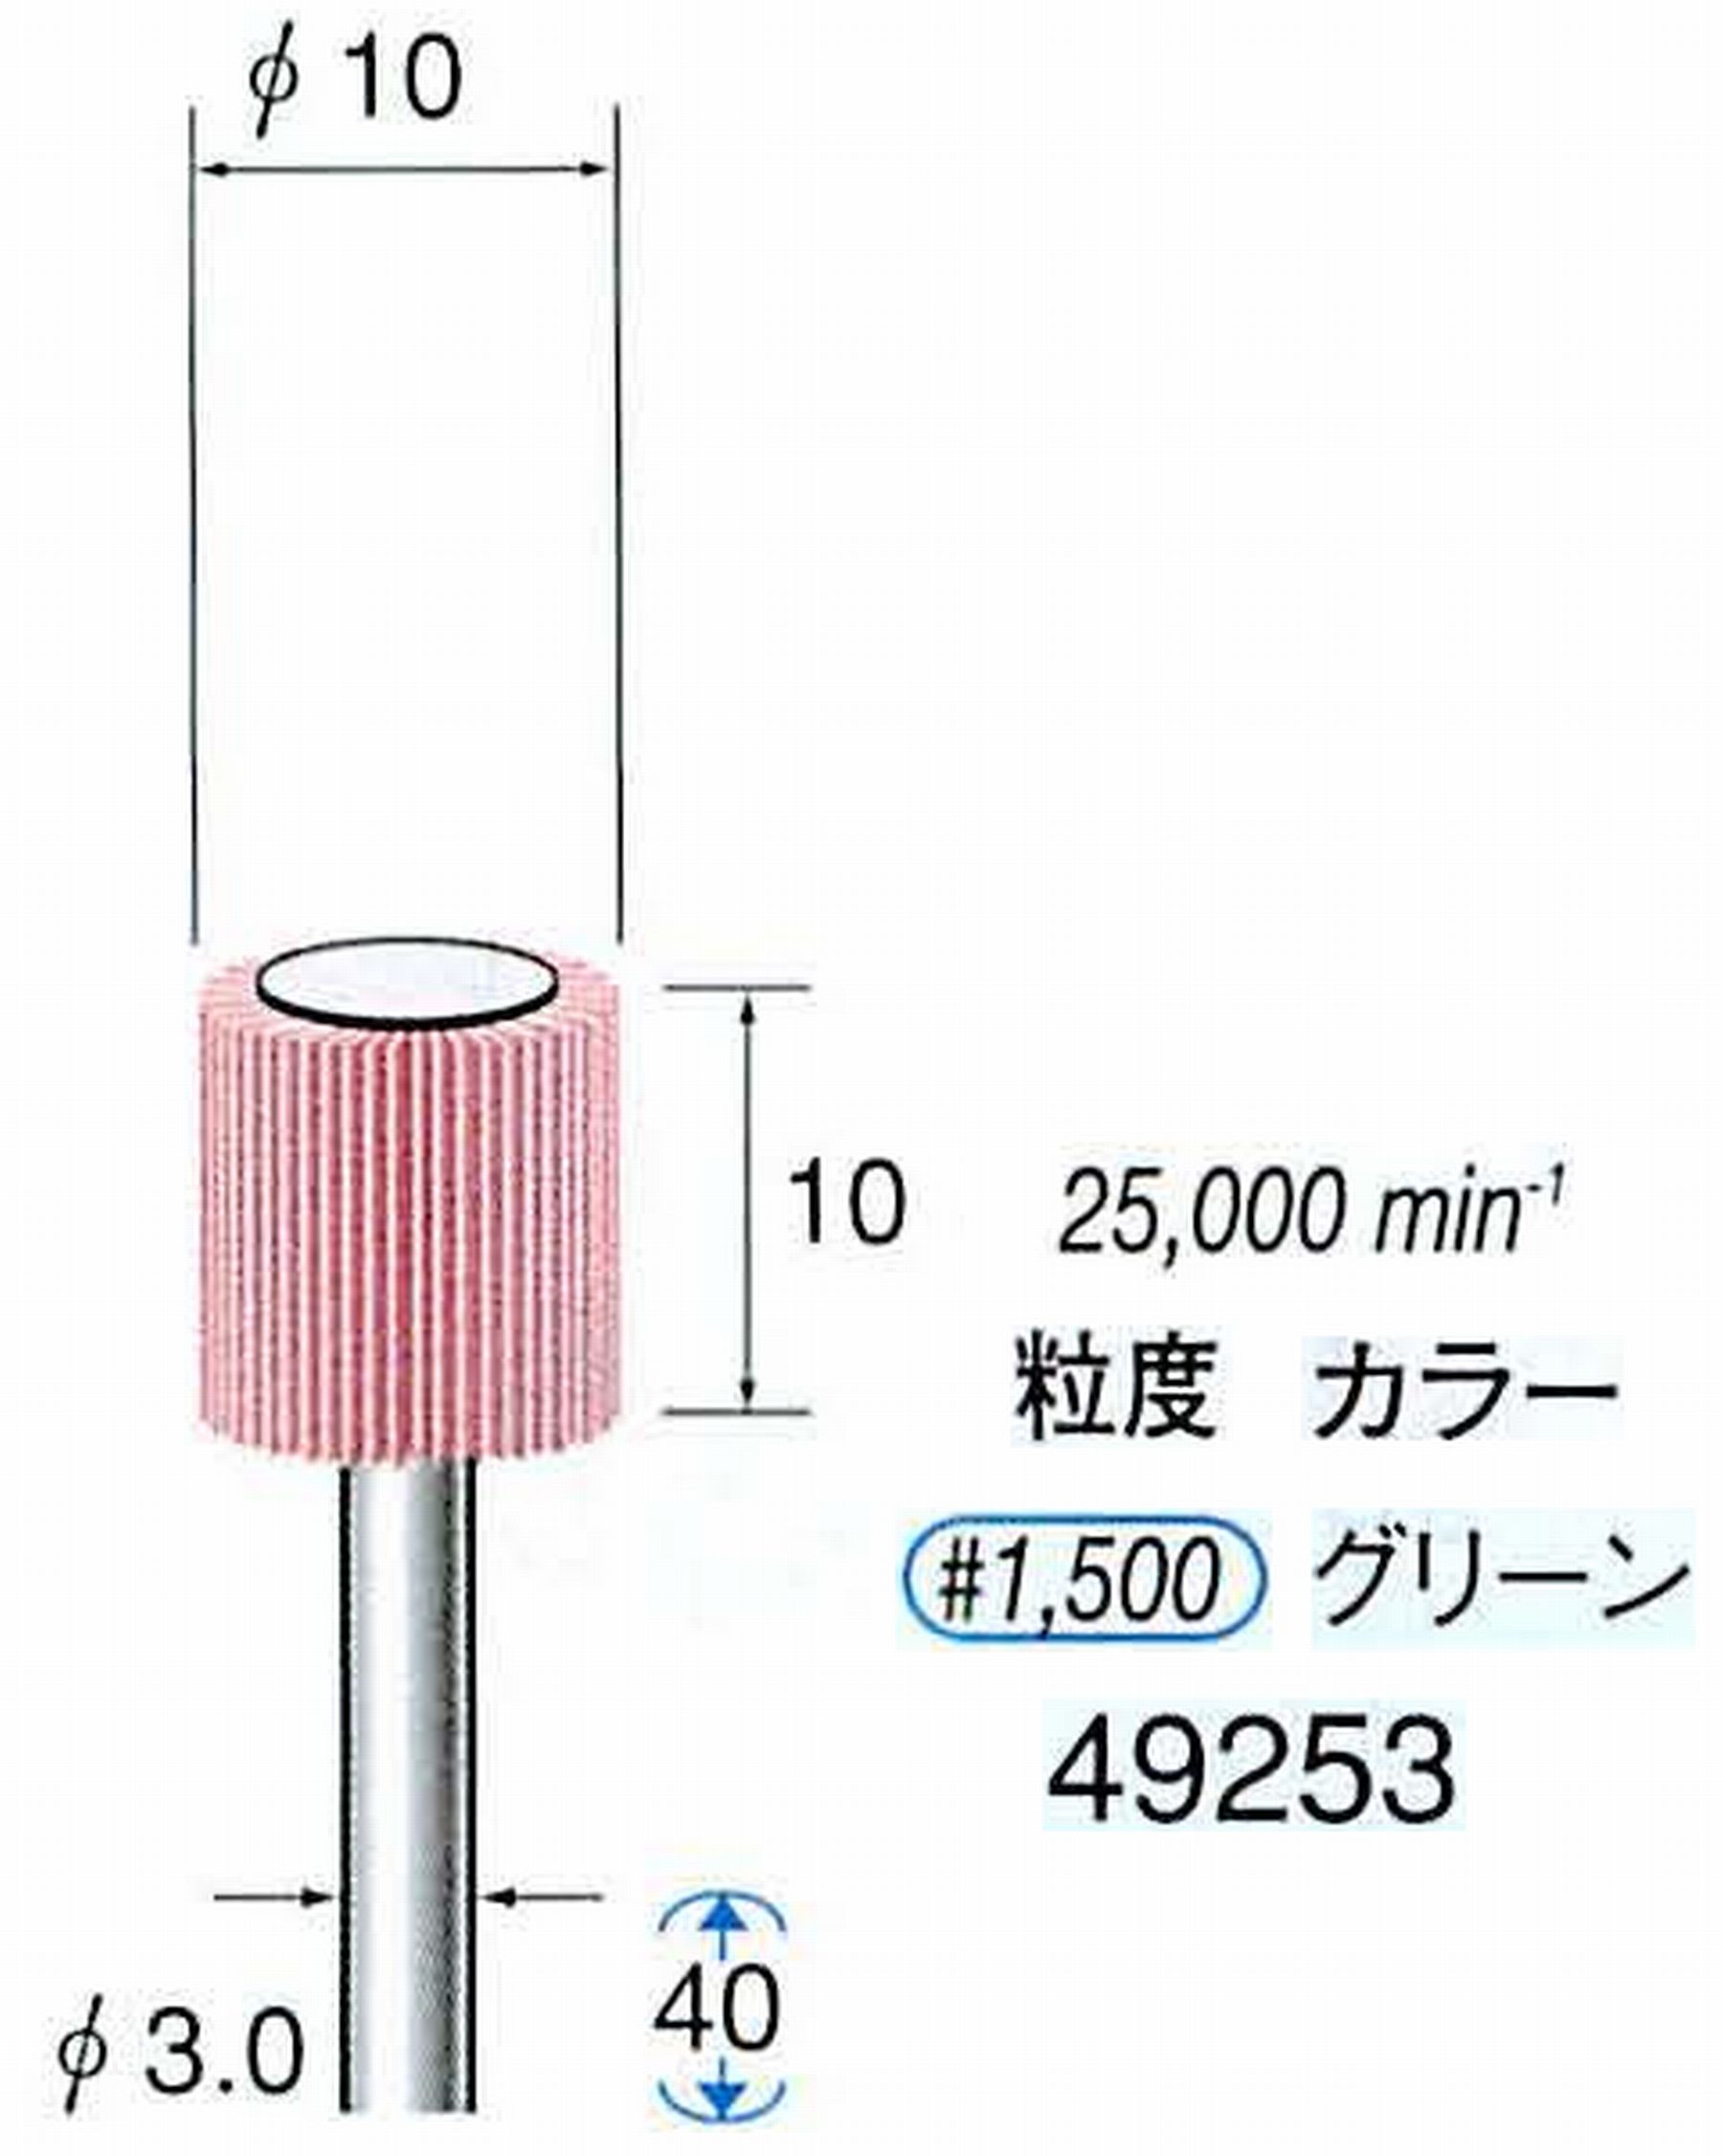 ナカニシ/NAKANISHI ファイン フラップサンダー 軸径(シャンク)φ3.0mm 49253